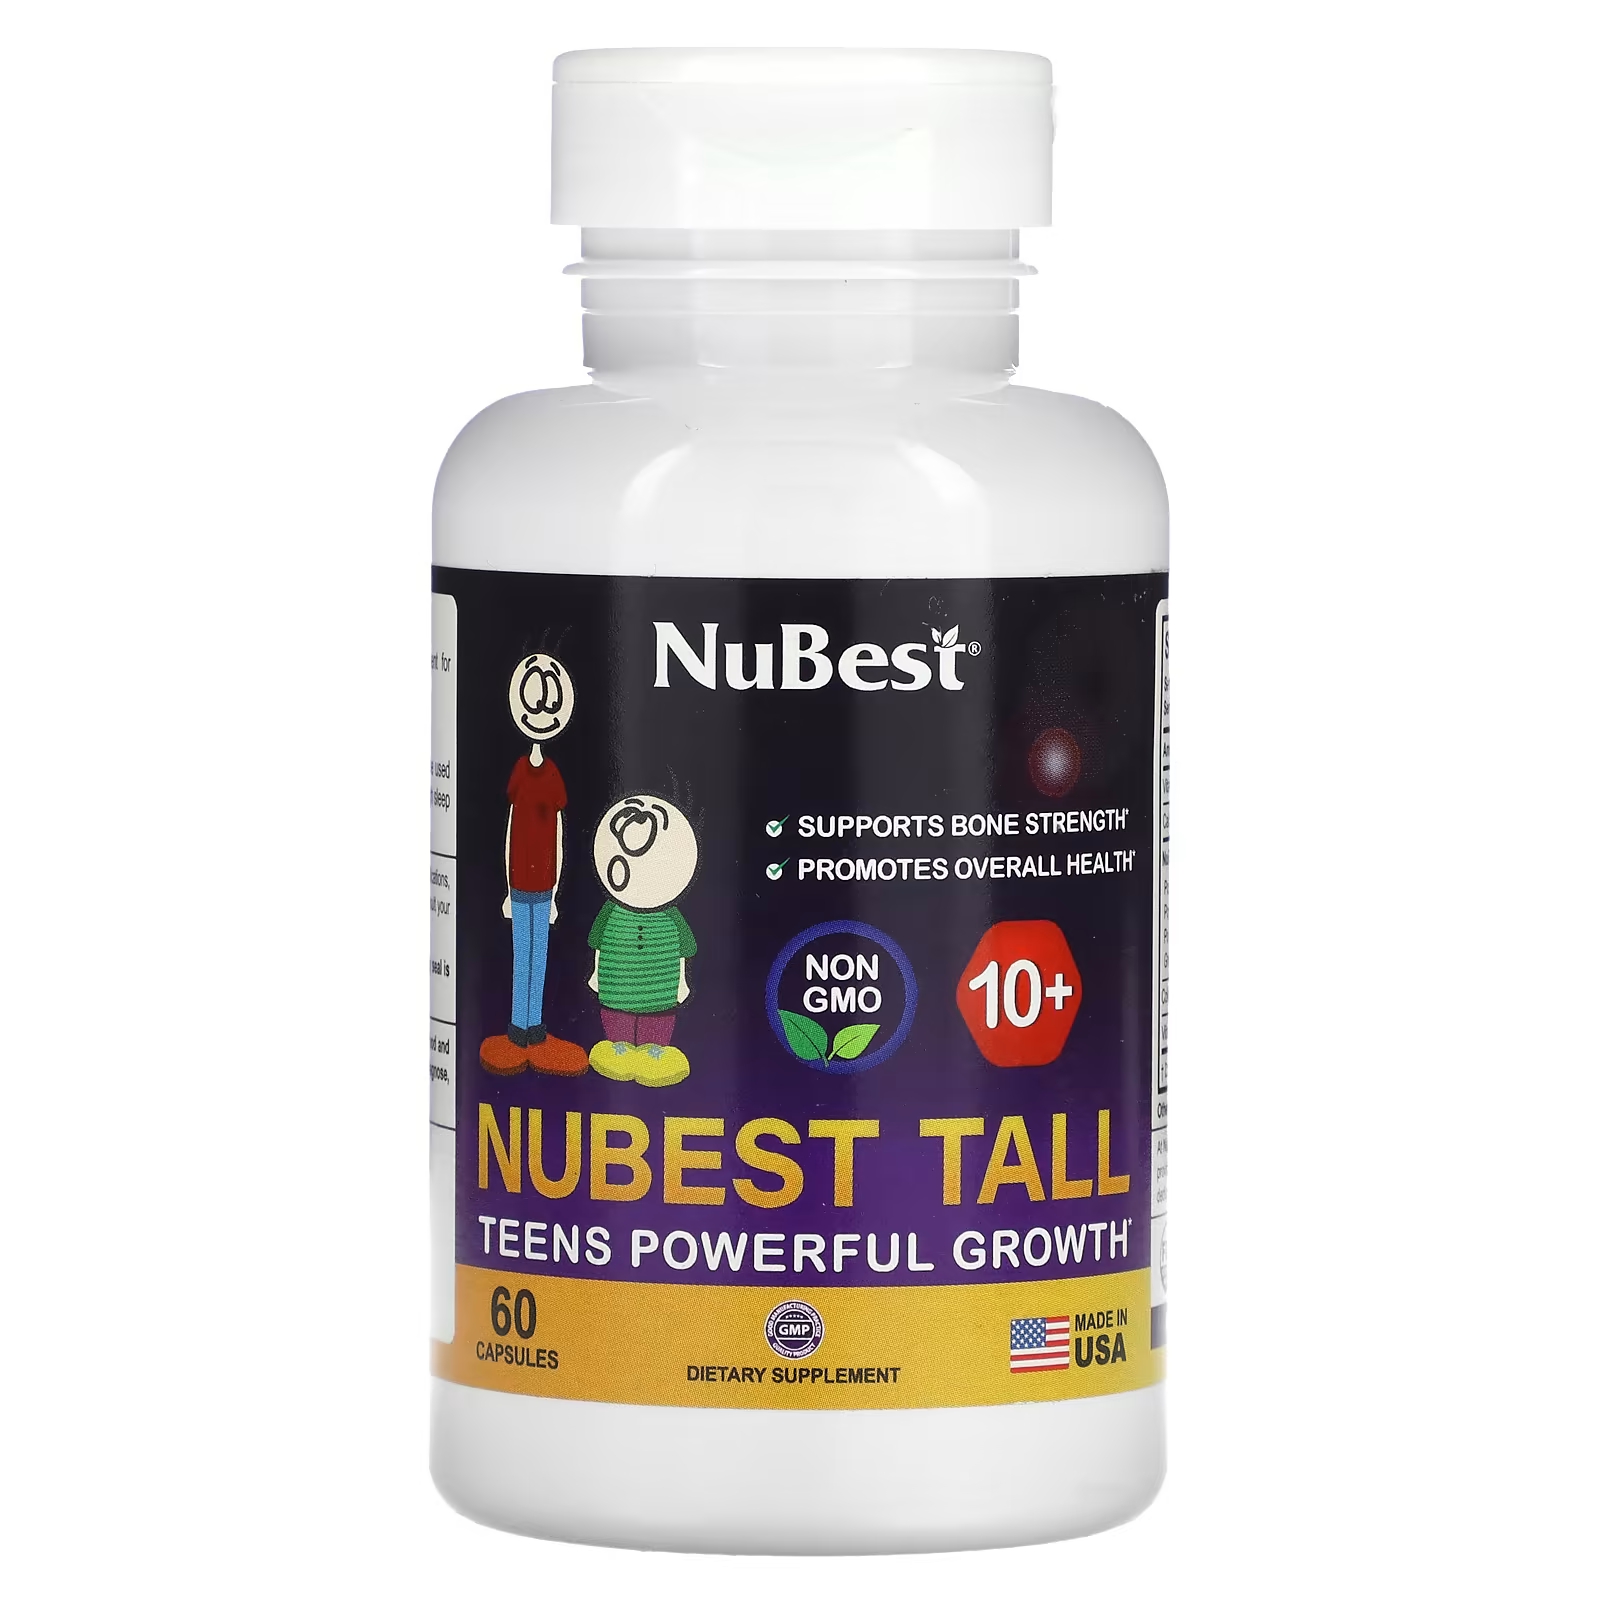 Пищевая добавка NuBest для здорового роста подростков, 60 капсул